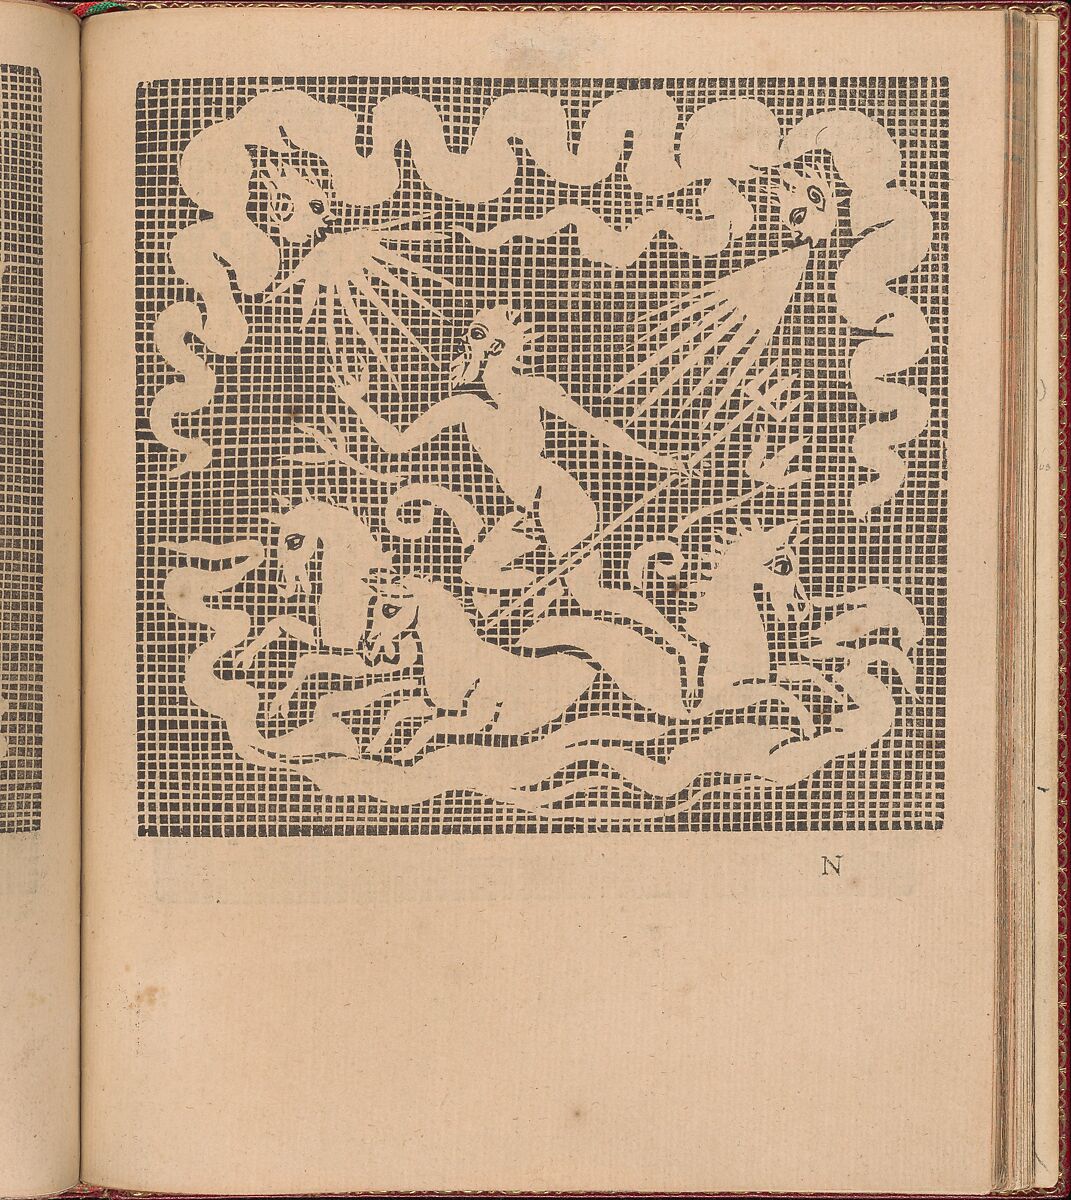 Les Singuliers et Nouveaux Portraicts... page 49 (recto), Federico de Vinciolo (Italian, active Paris, ca. 1587–99), Woodcut 